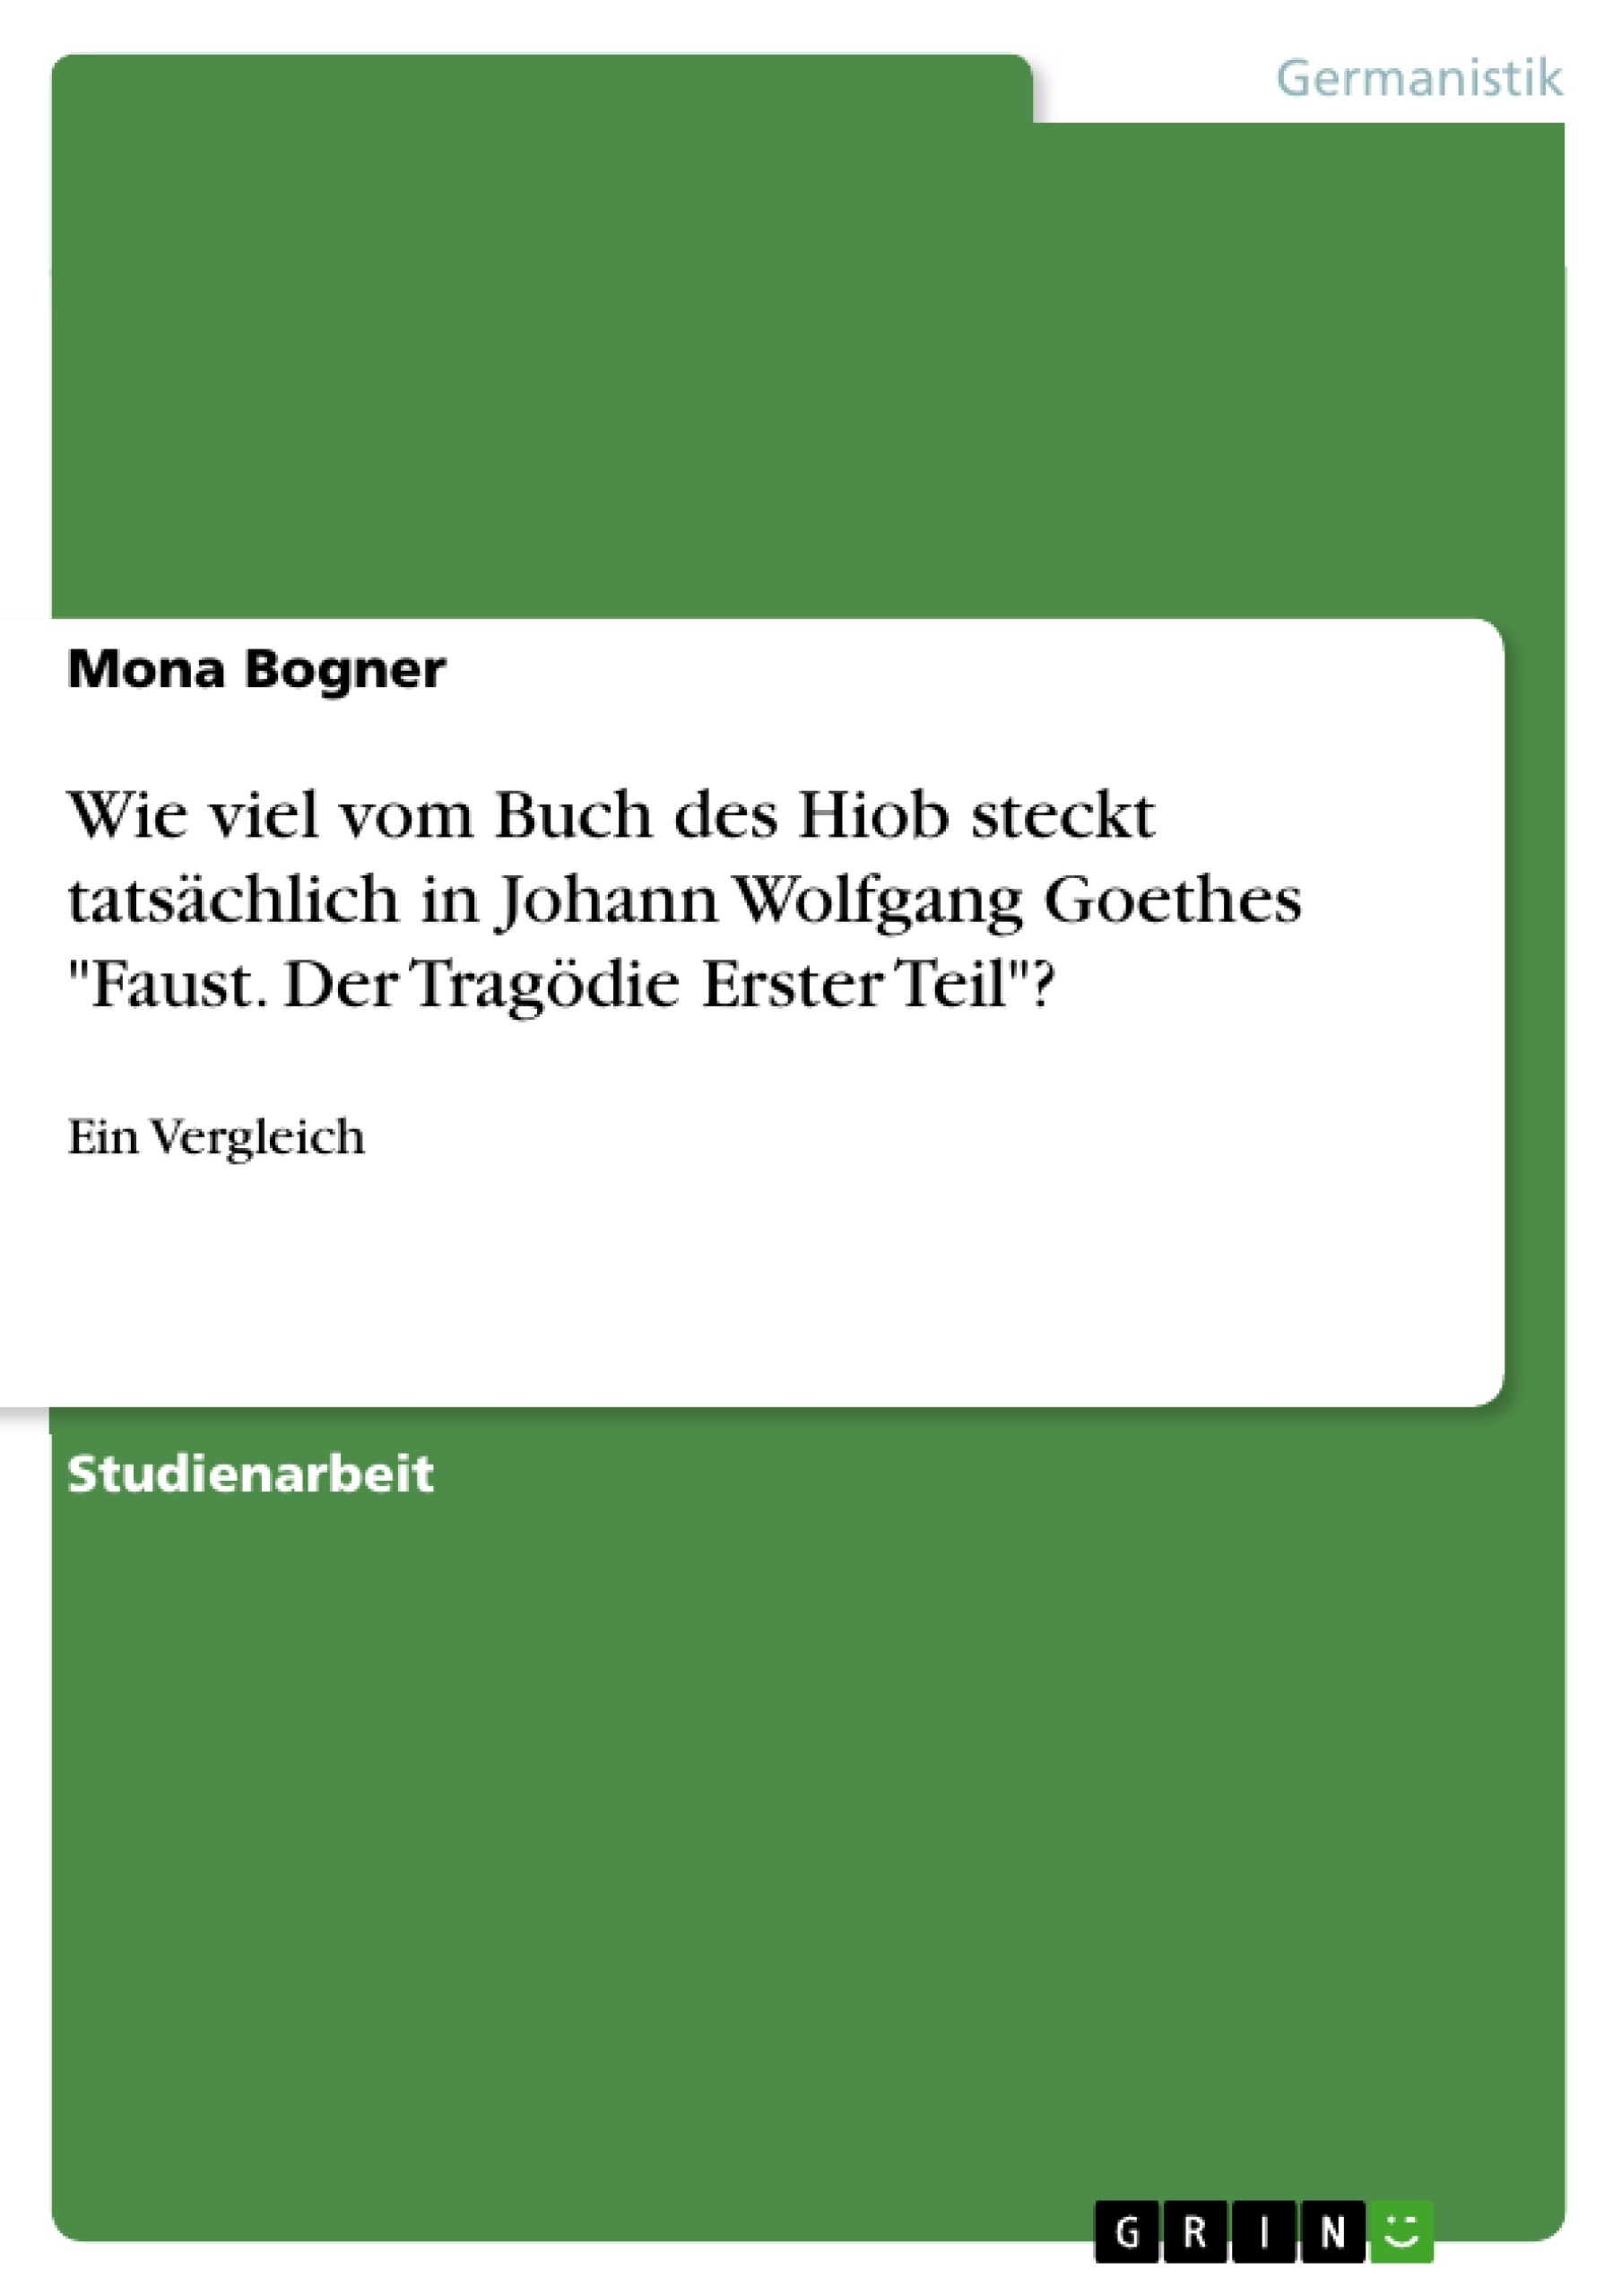 Title: Wie viel vom Buch des Hiob steckt tatsächlich in Johann Wolfgang Goethes "Faust. Der Tragödie Erster Teil"?